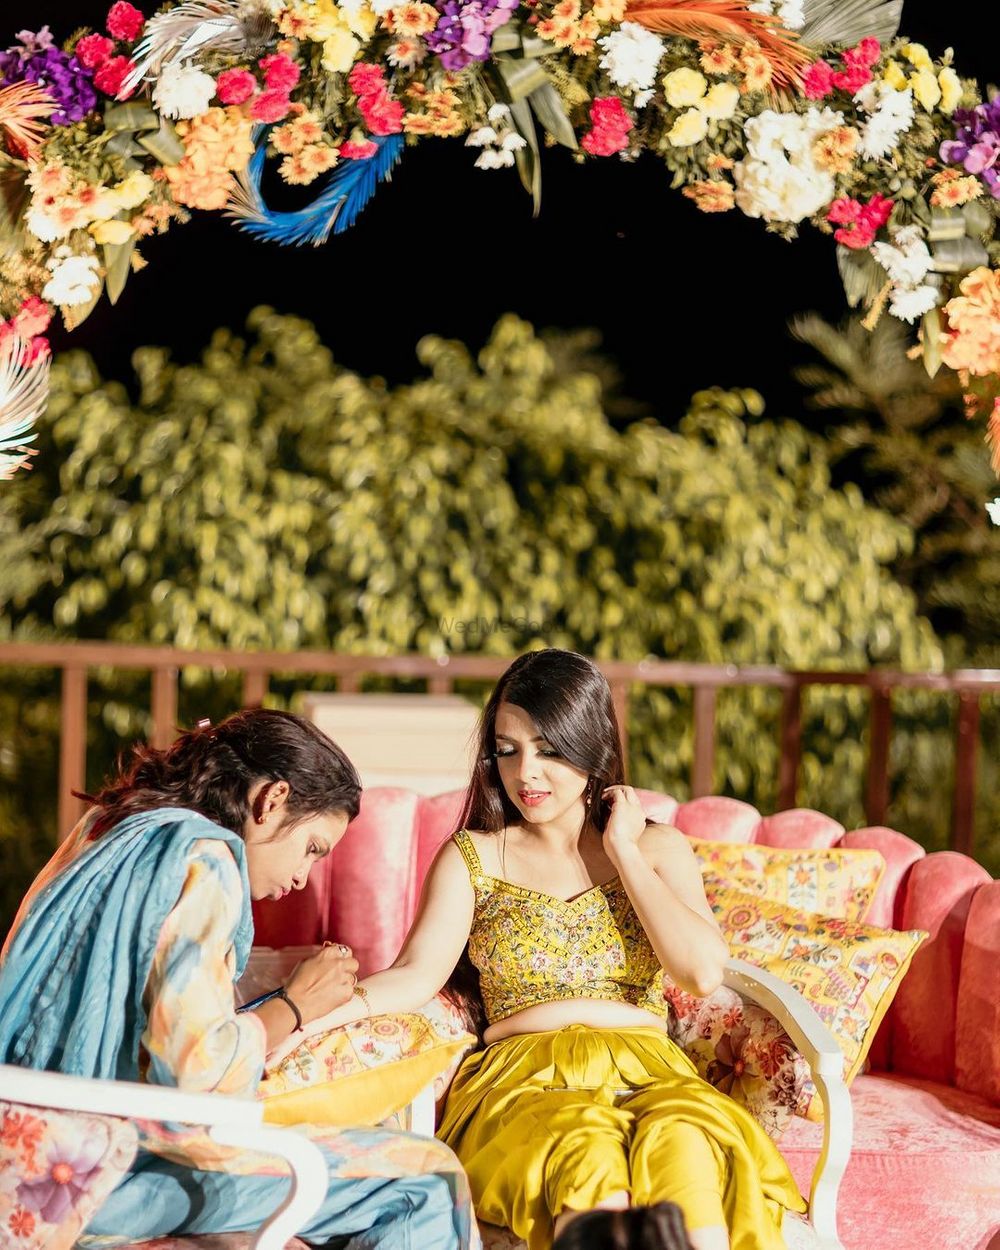 Photo From Vaibhav & Shivika Wedding at Ananta Udaipur - By Art Effect